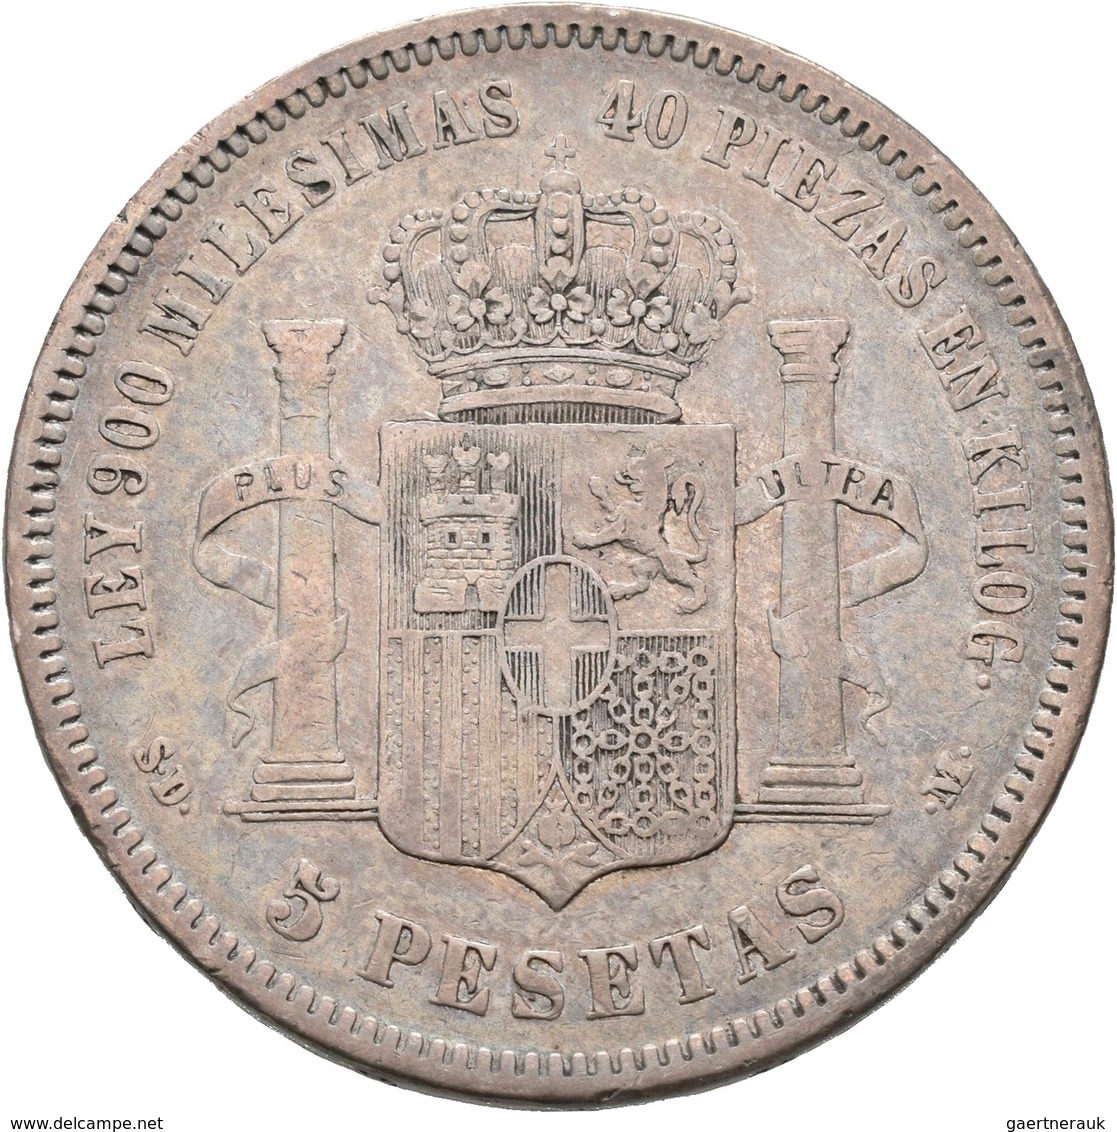 Spanien: Lot 8 Stück; 8 x 5 Pesetas: 1870, 1871 (2x), 1877, 1885, 1889, 1893, 1897, sehr schön, sehr